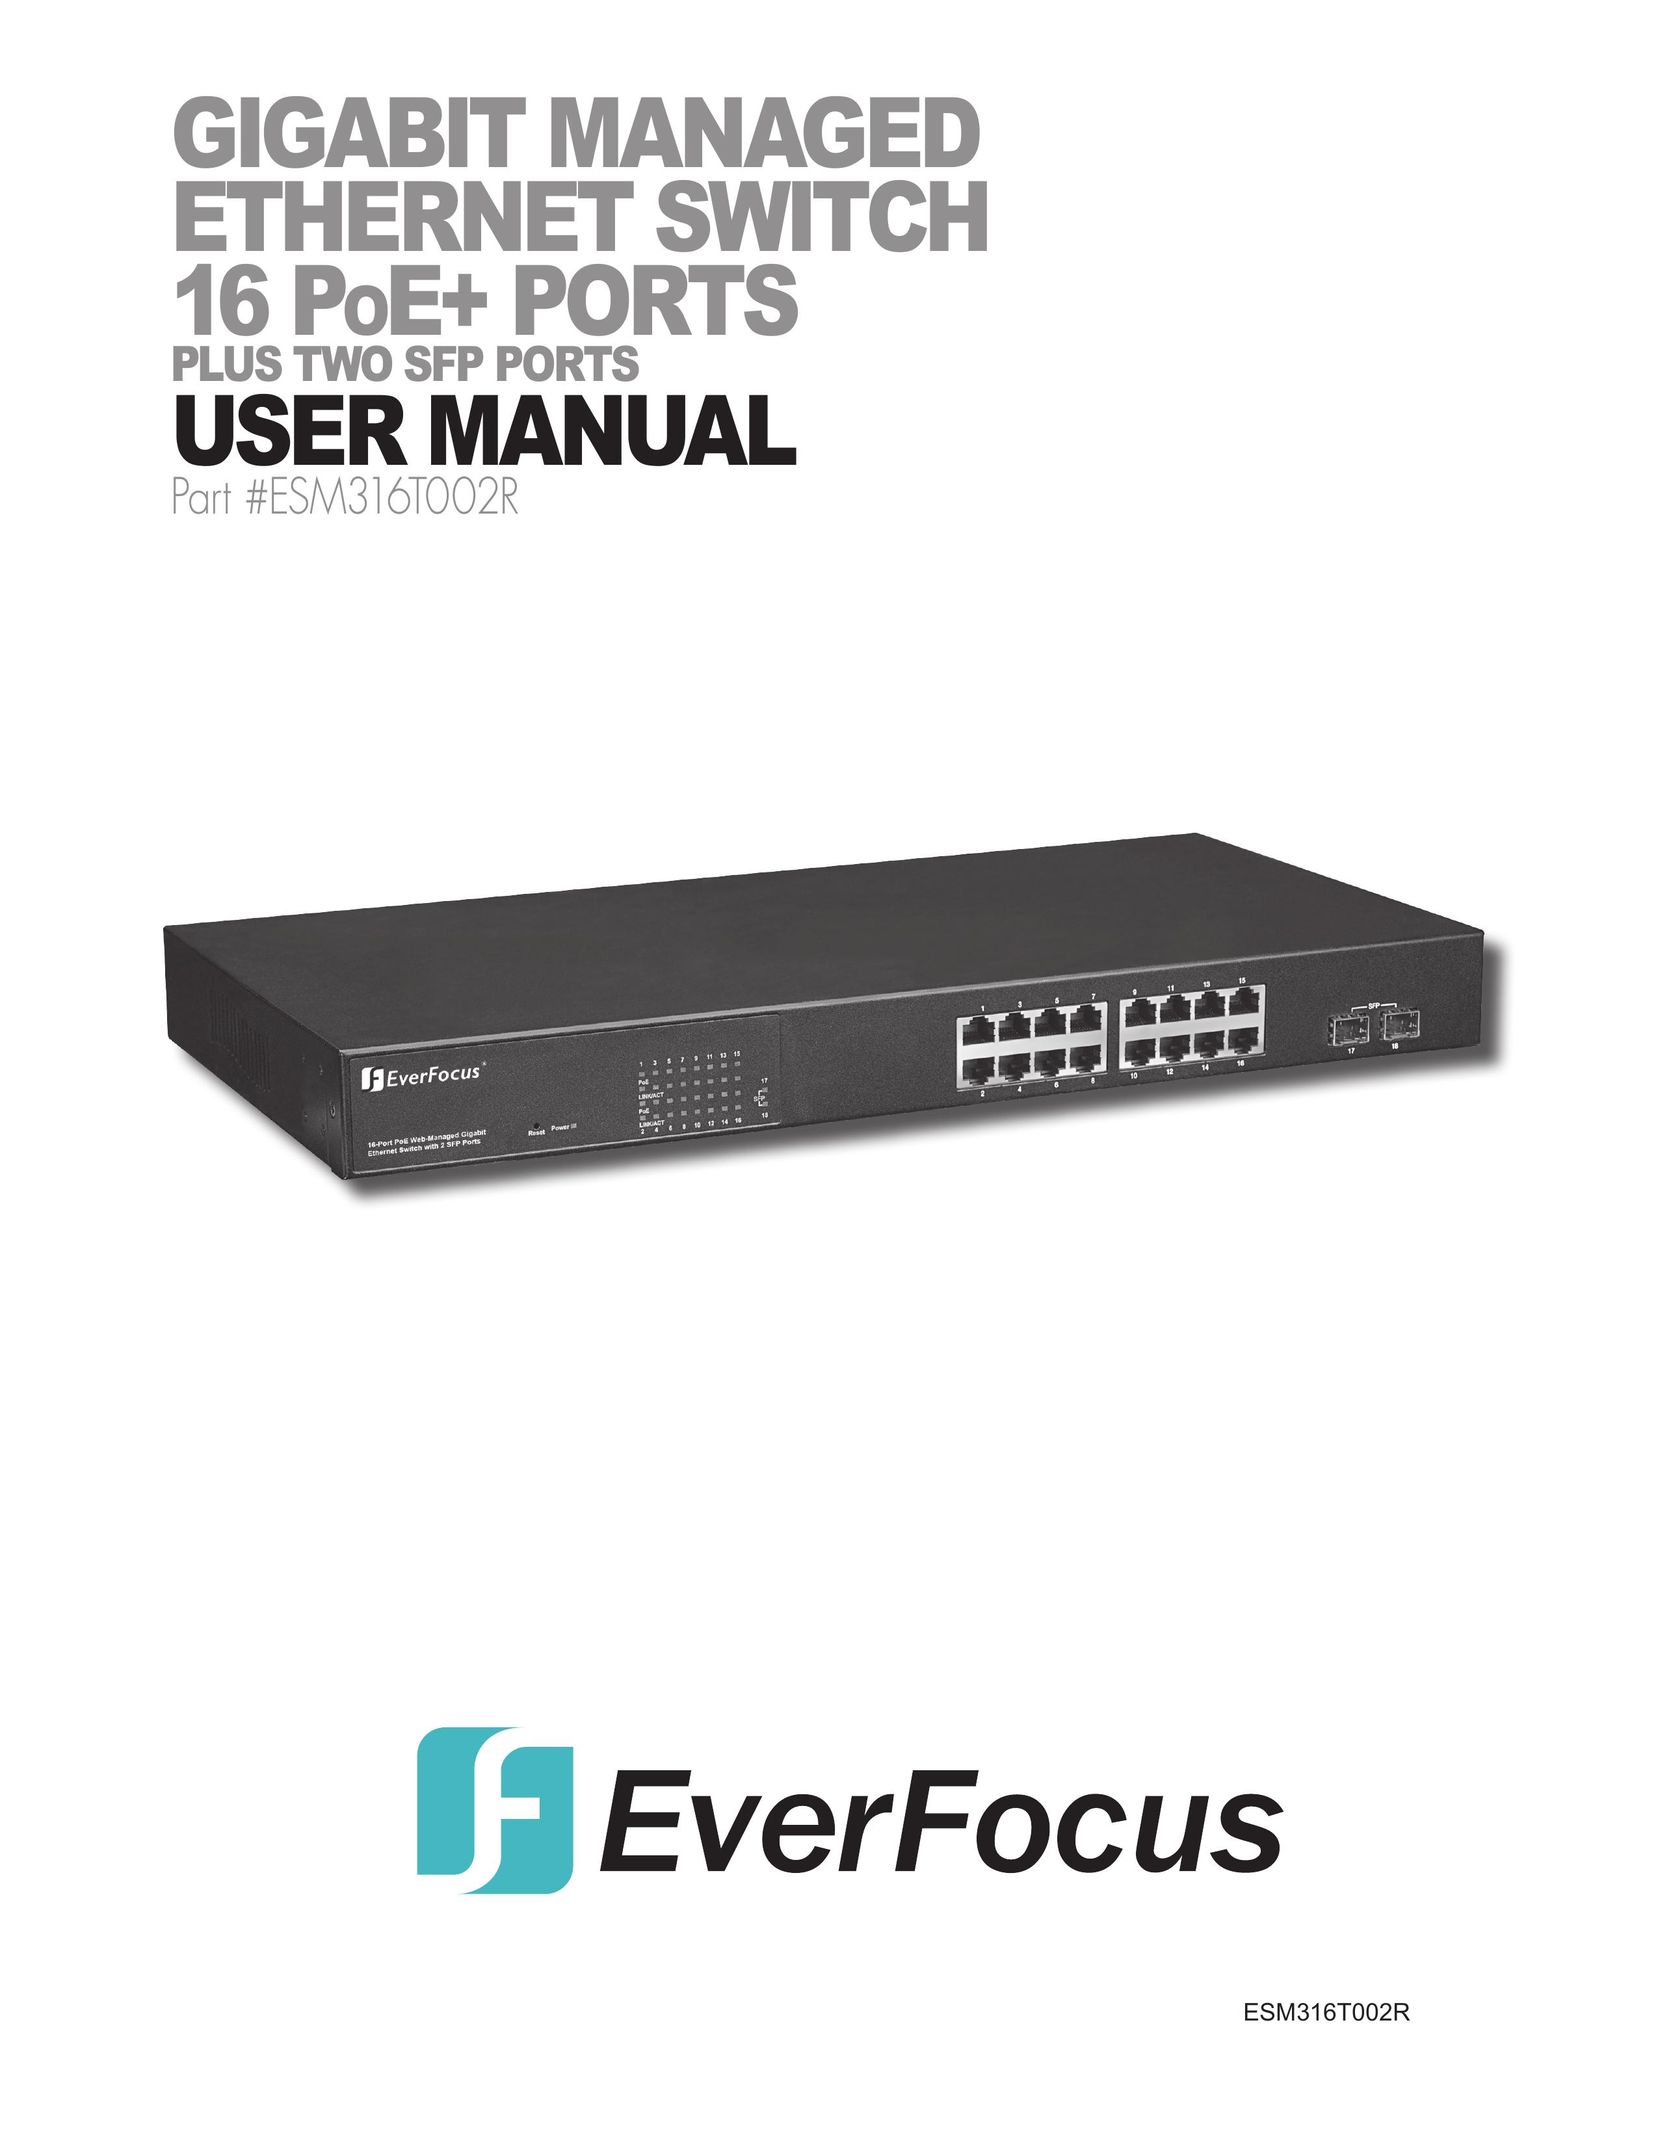 EverFocus ESM316T002R Switch User Manual